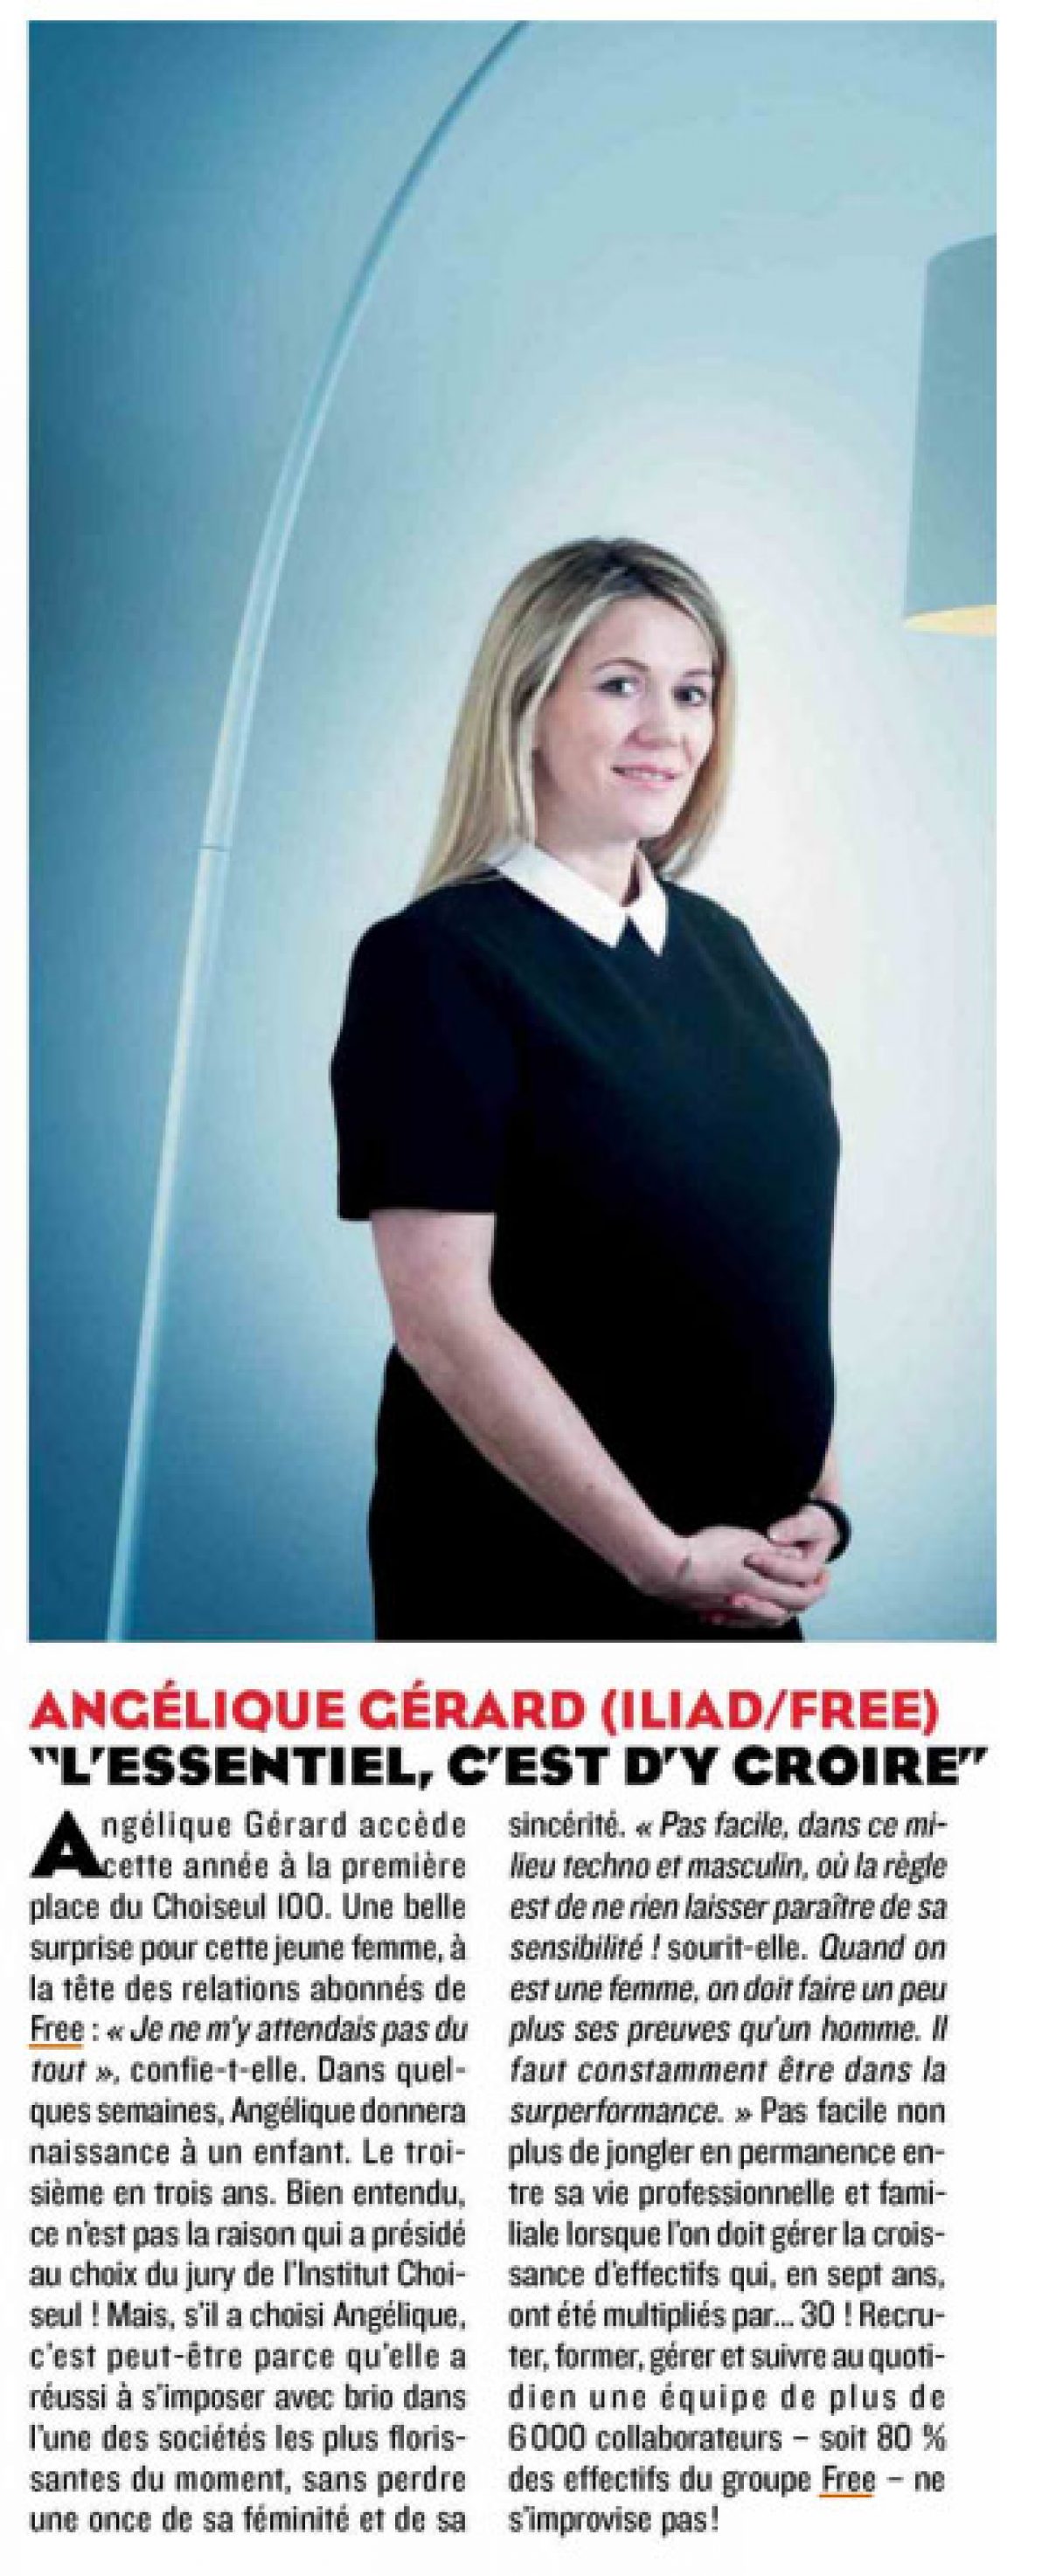 Angélique Gérard (Iliad/Free) succède à Emmanuel Macron à la 1ère place du palmarès Choiseul des 100 nouveaux leaders économiques